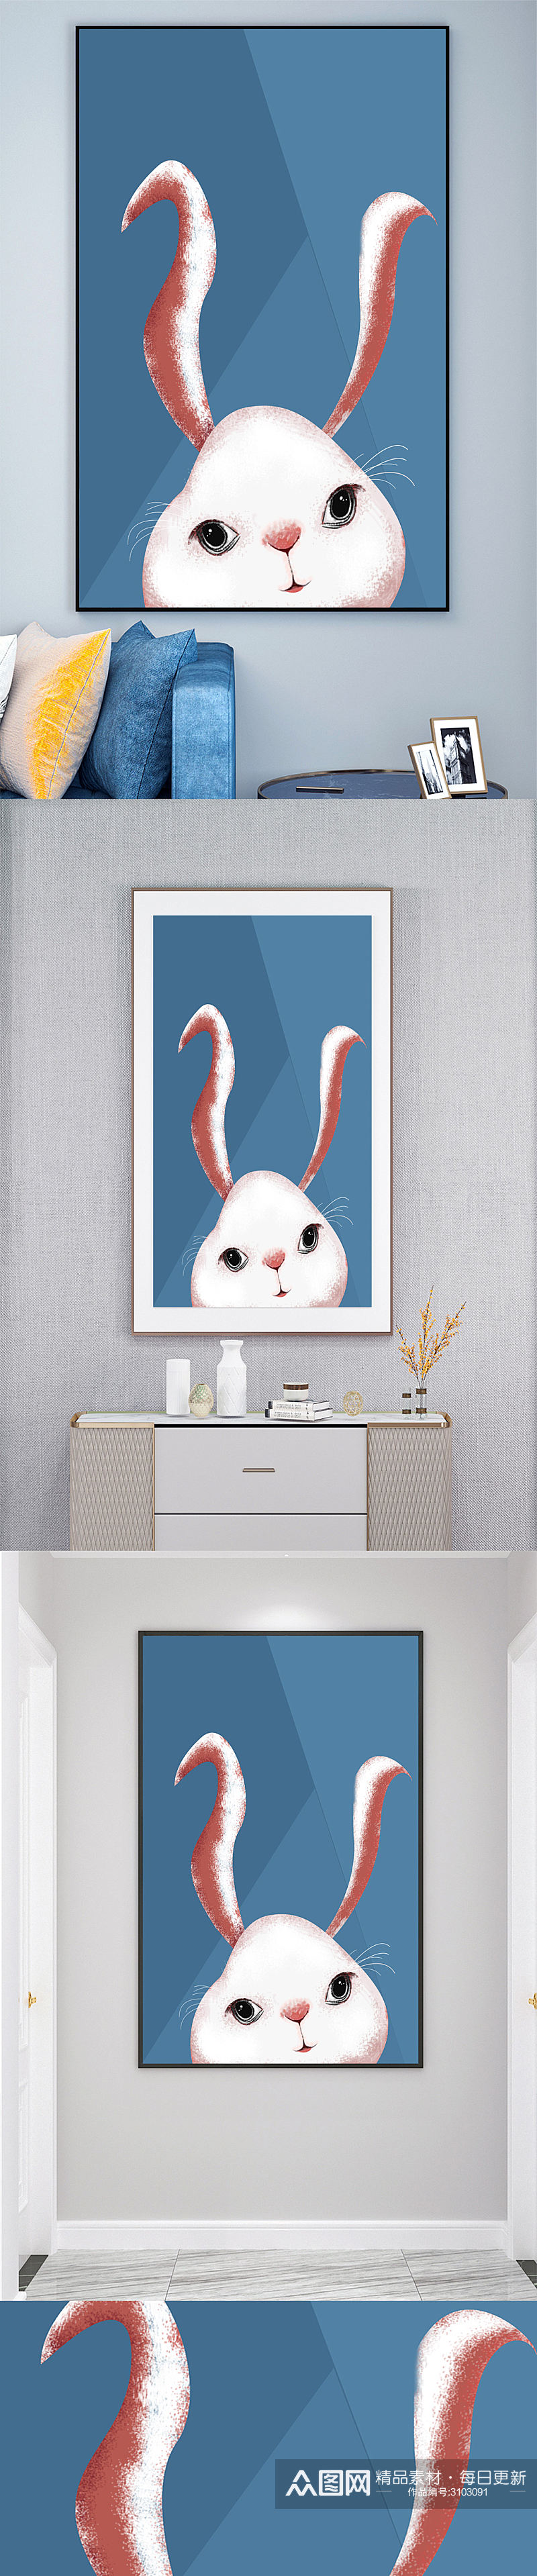 卡通兔子儿童房壁画装饰画素材